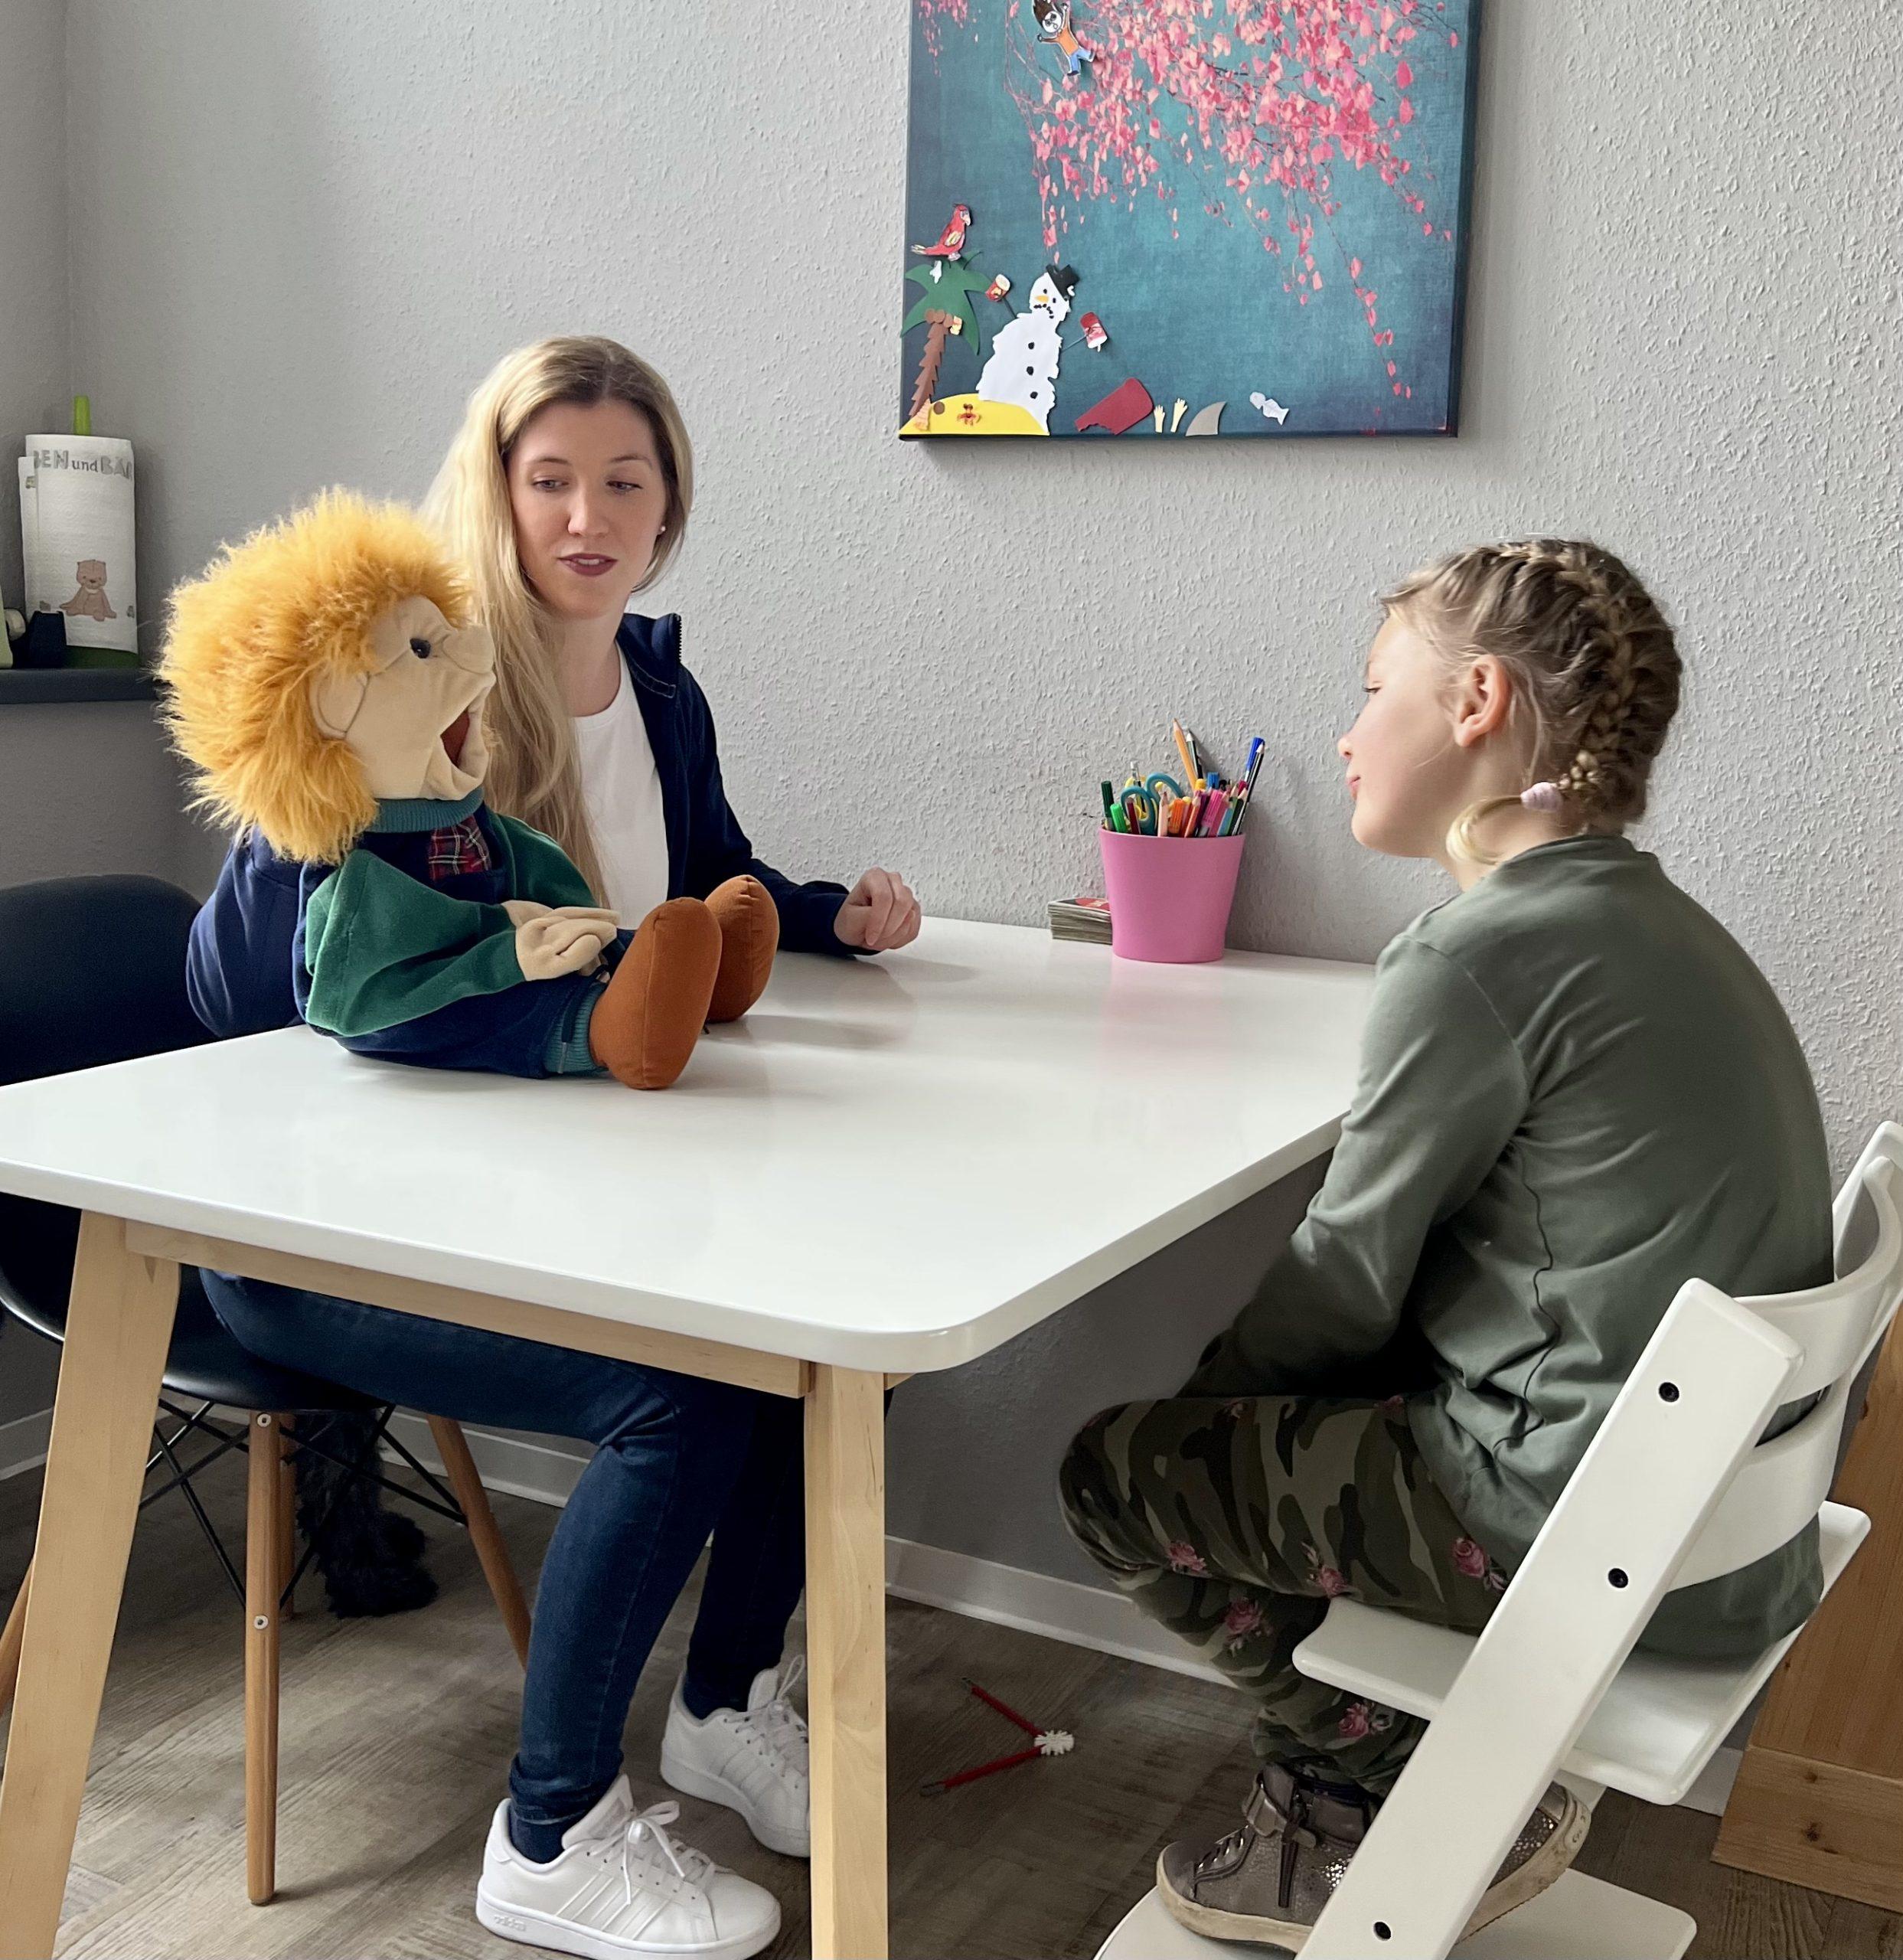 Eine Therapeutin setzt eine Handpuppe ein, um während einer Therapiesitzung beim Therapieteam Fimmers in Krefeld mit einem Kind zu interagieren.